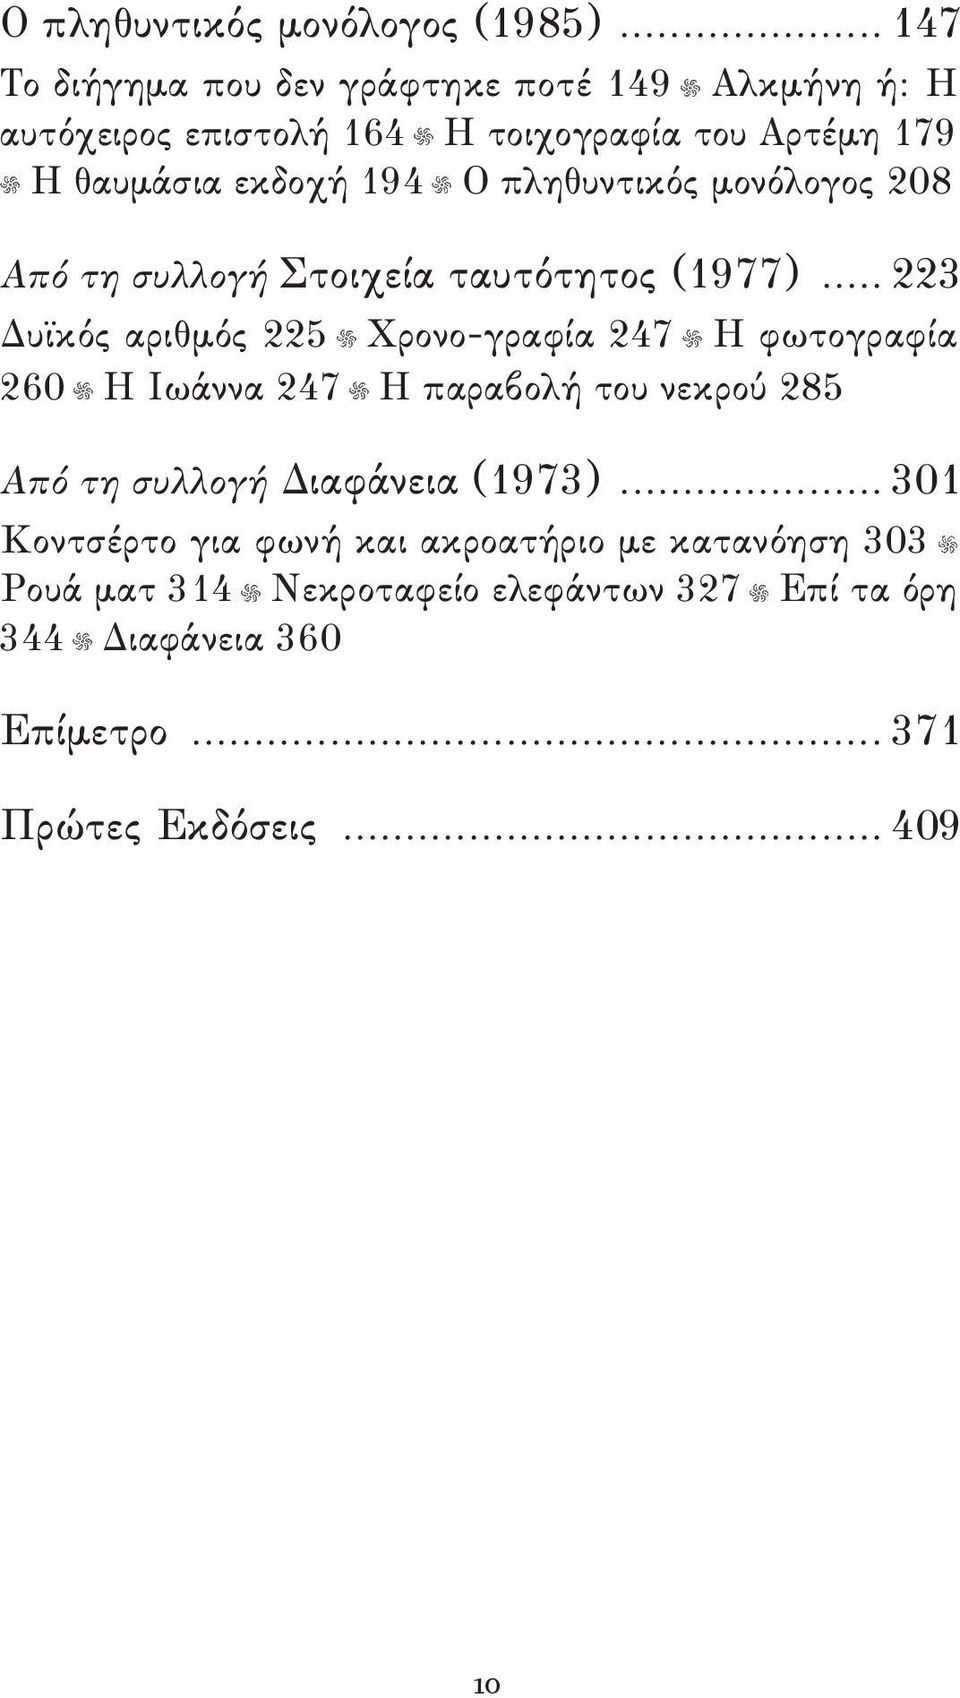 πληθυντικός μονόλογος 208 Από τη συλλογή Στοιχεία ταυτότητος (1977).